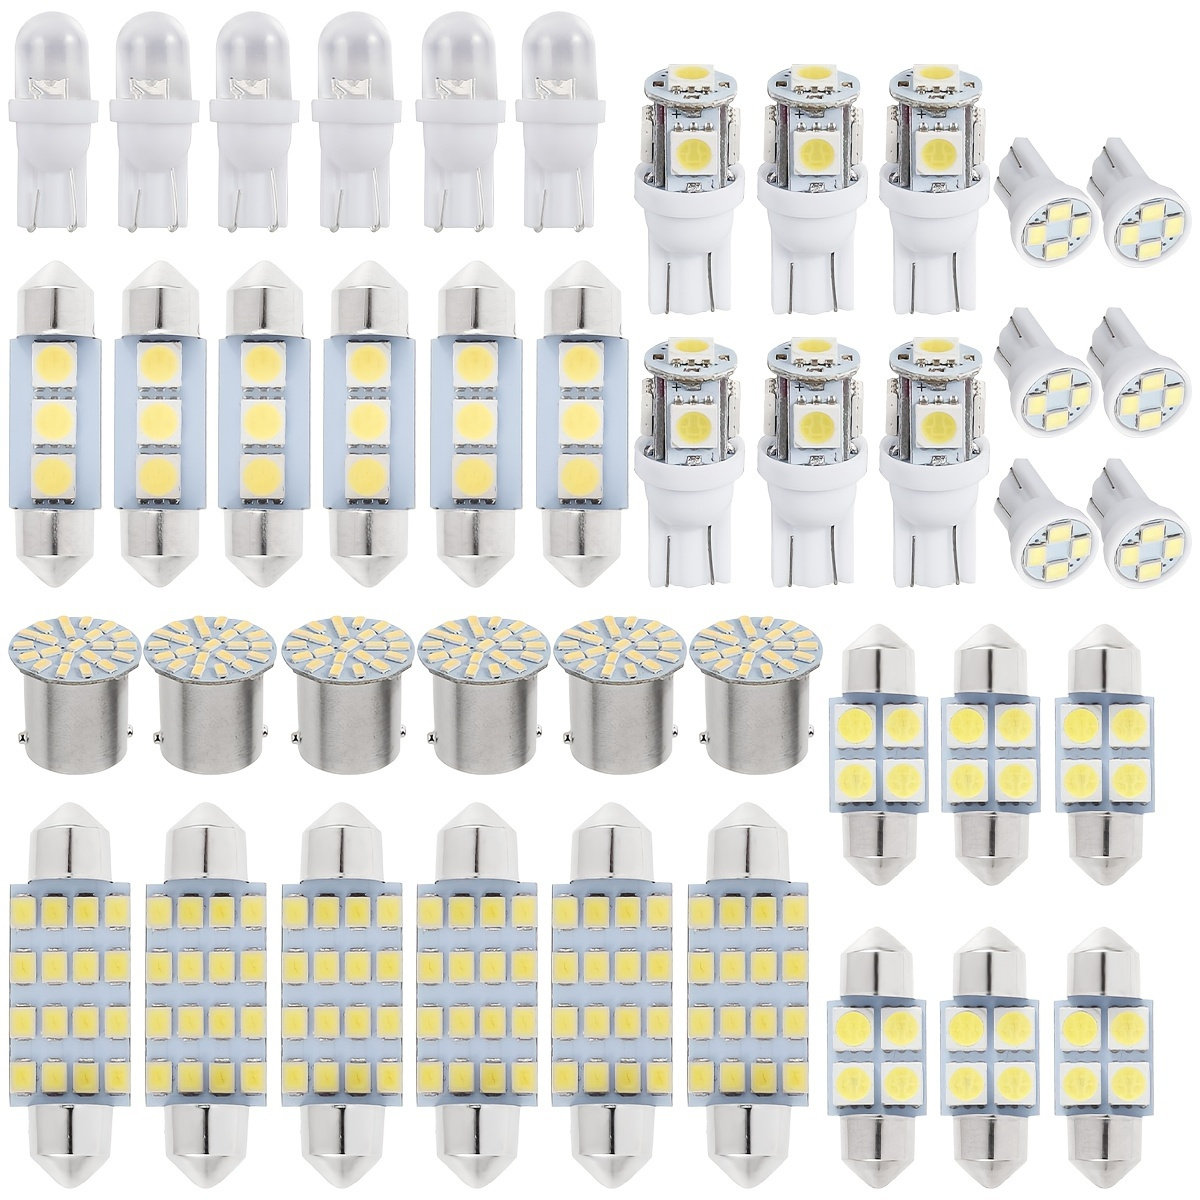 Pack de 2 Ampoules HB4 à Leds 6000K - Blanc Xenon